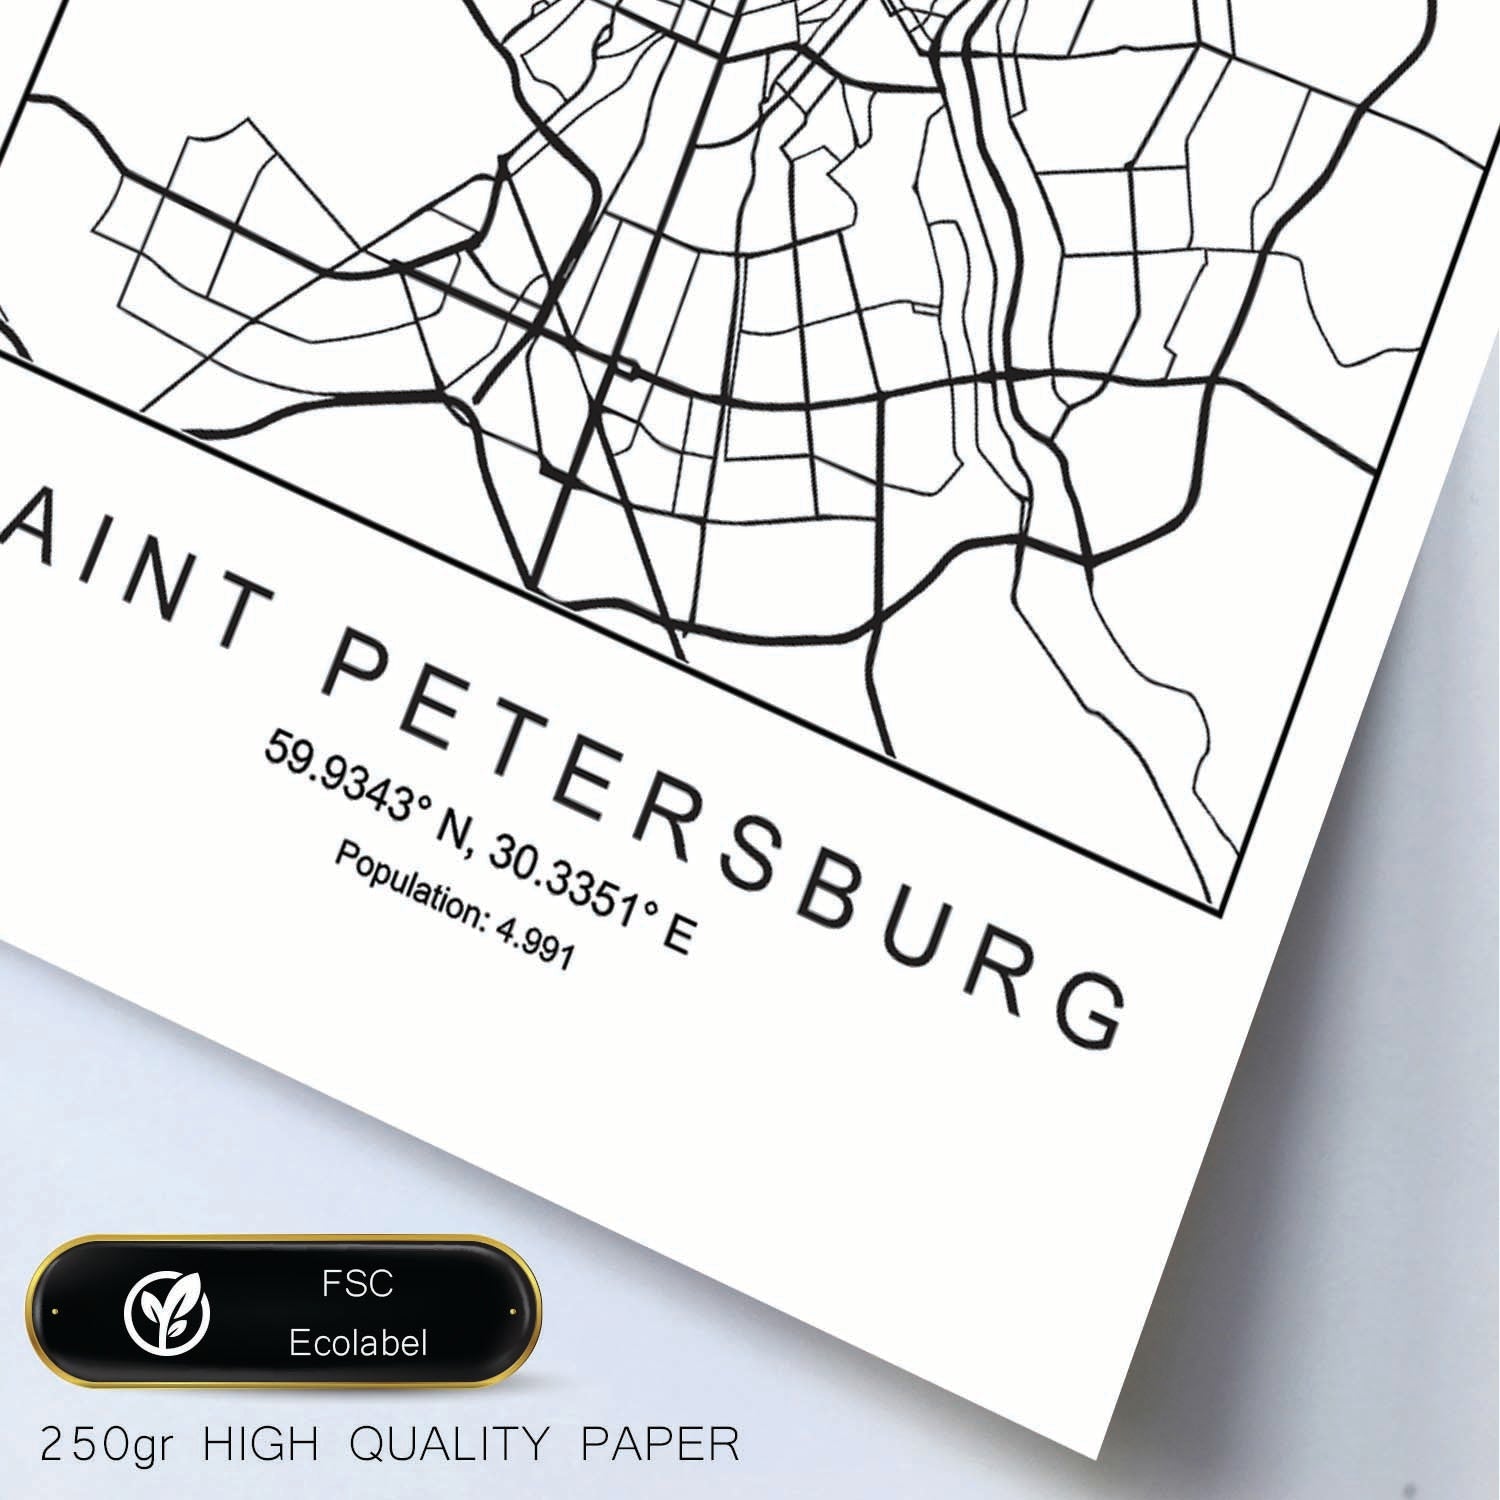 Lámina mapa de la ciudad Saint petersburg estilo nordico en blanco y negro.-Artwork-Nacnic-Nacnic Estudio SL